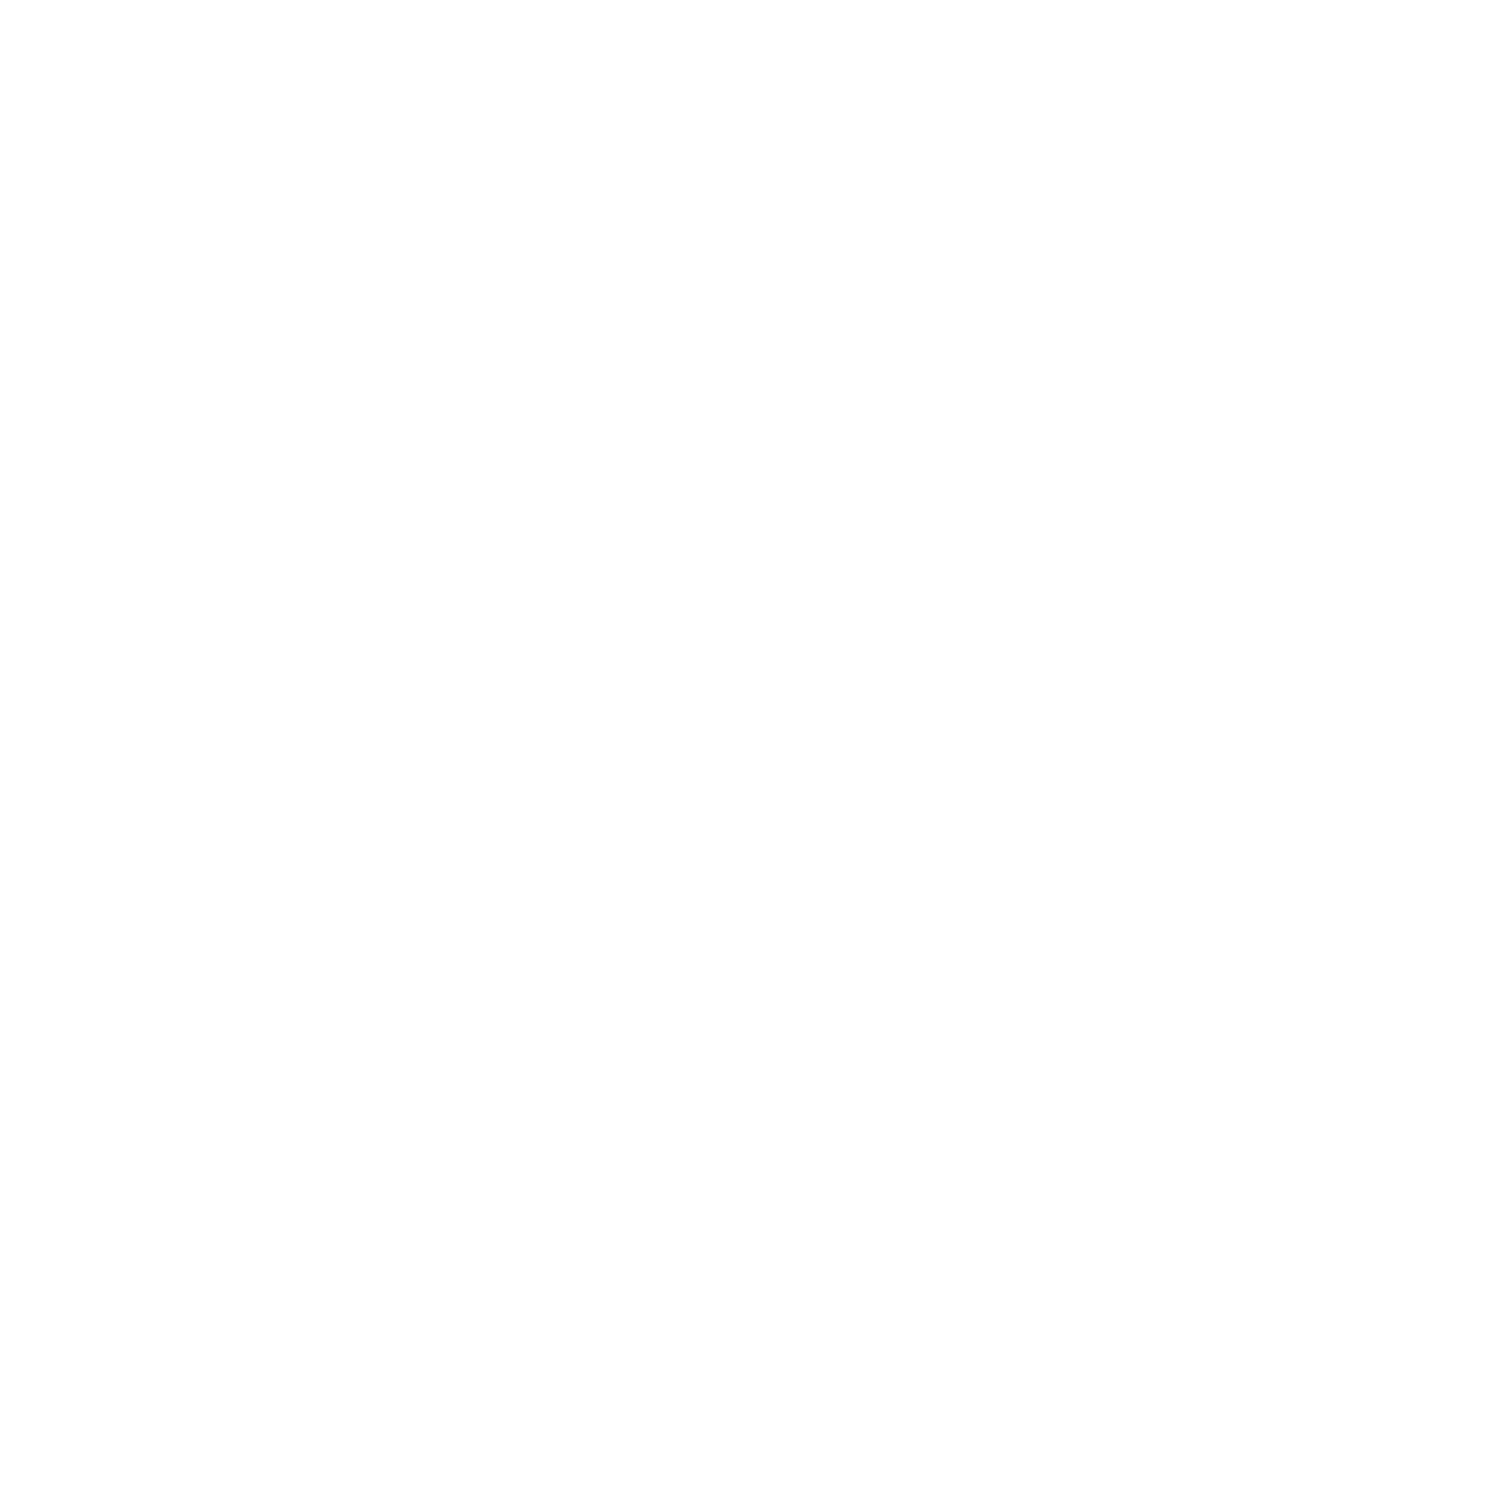 B3E